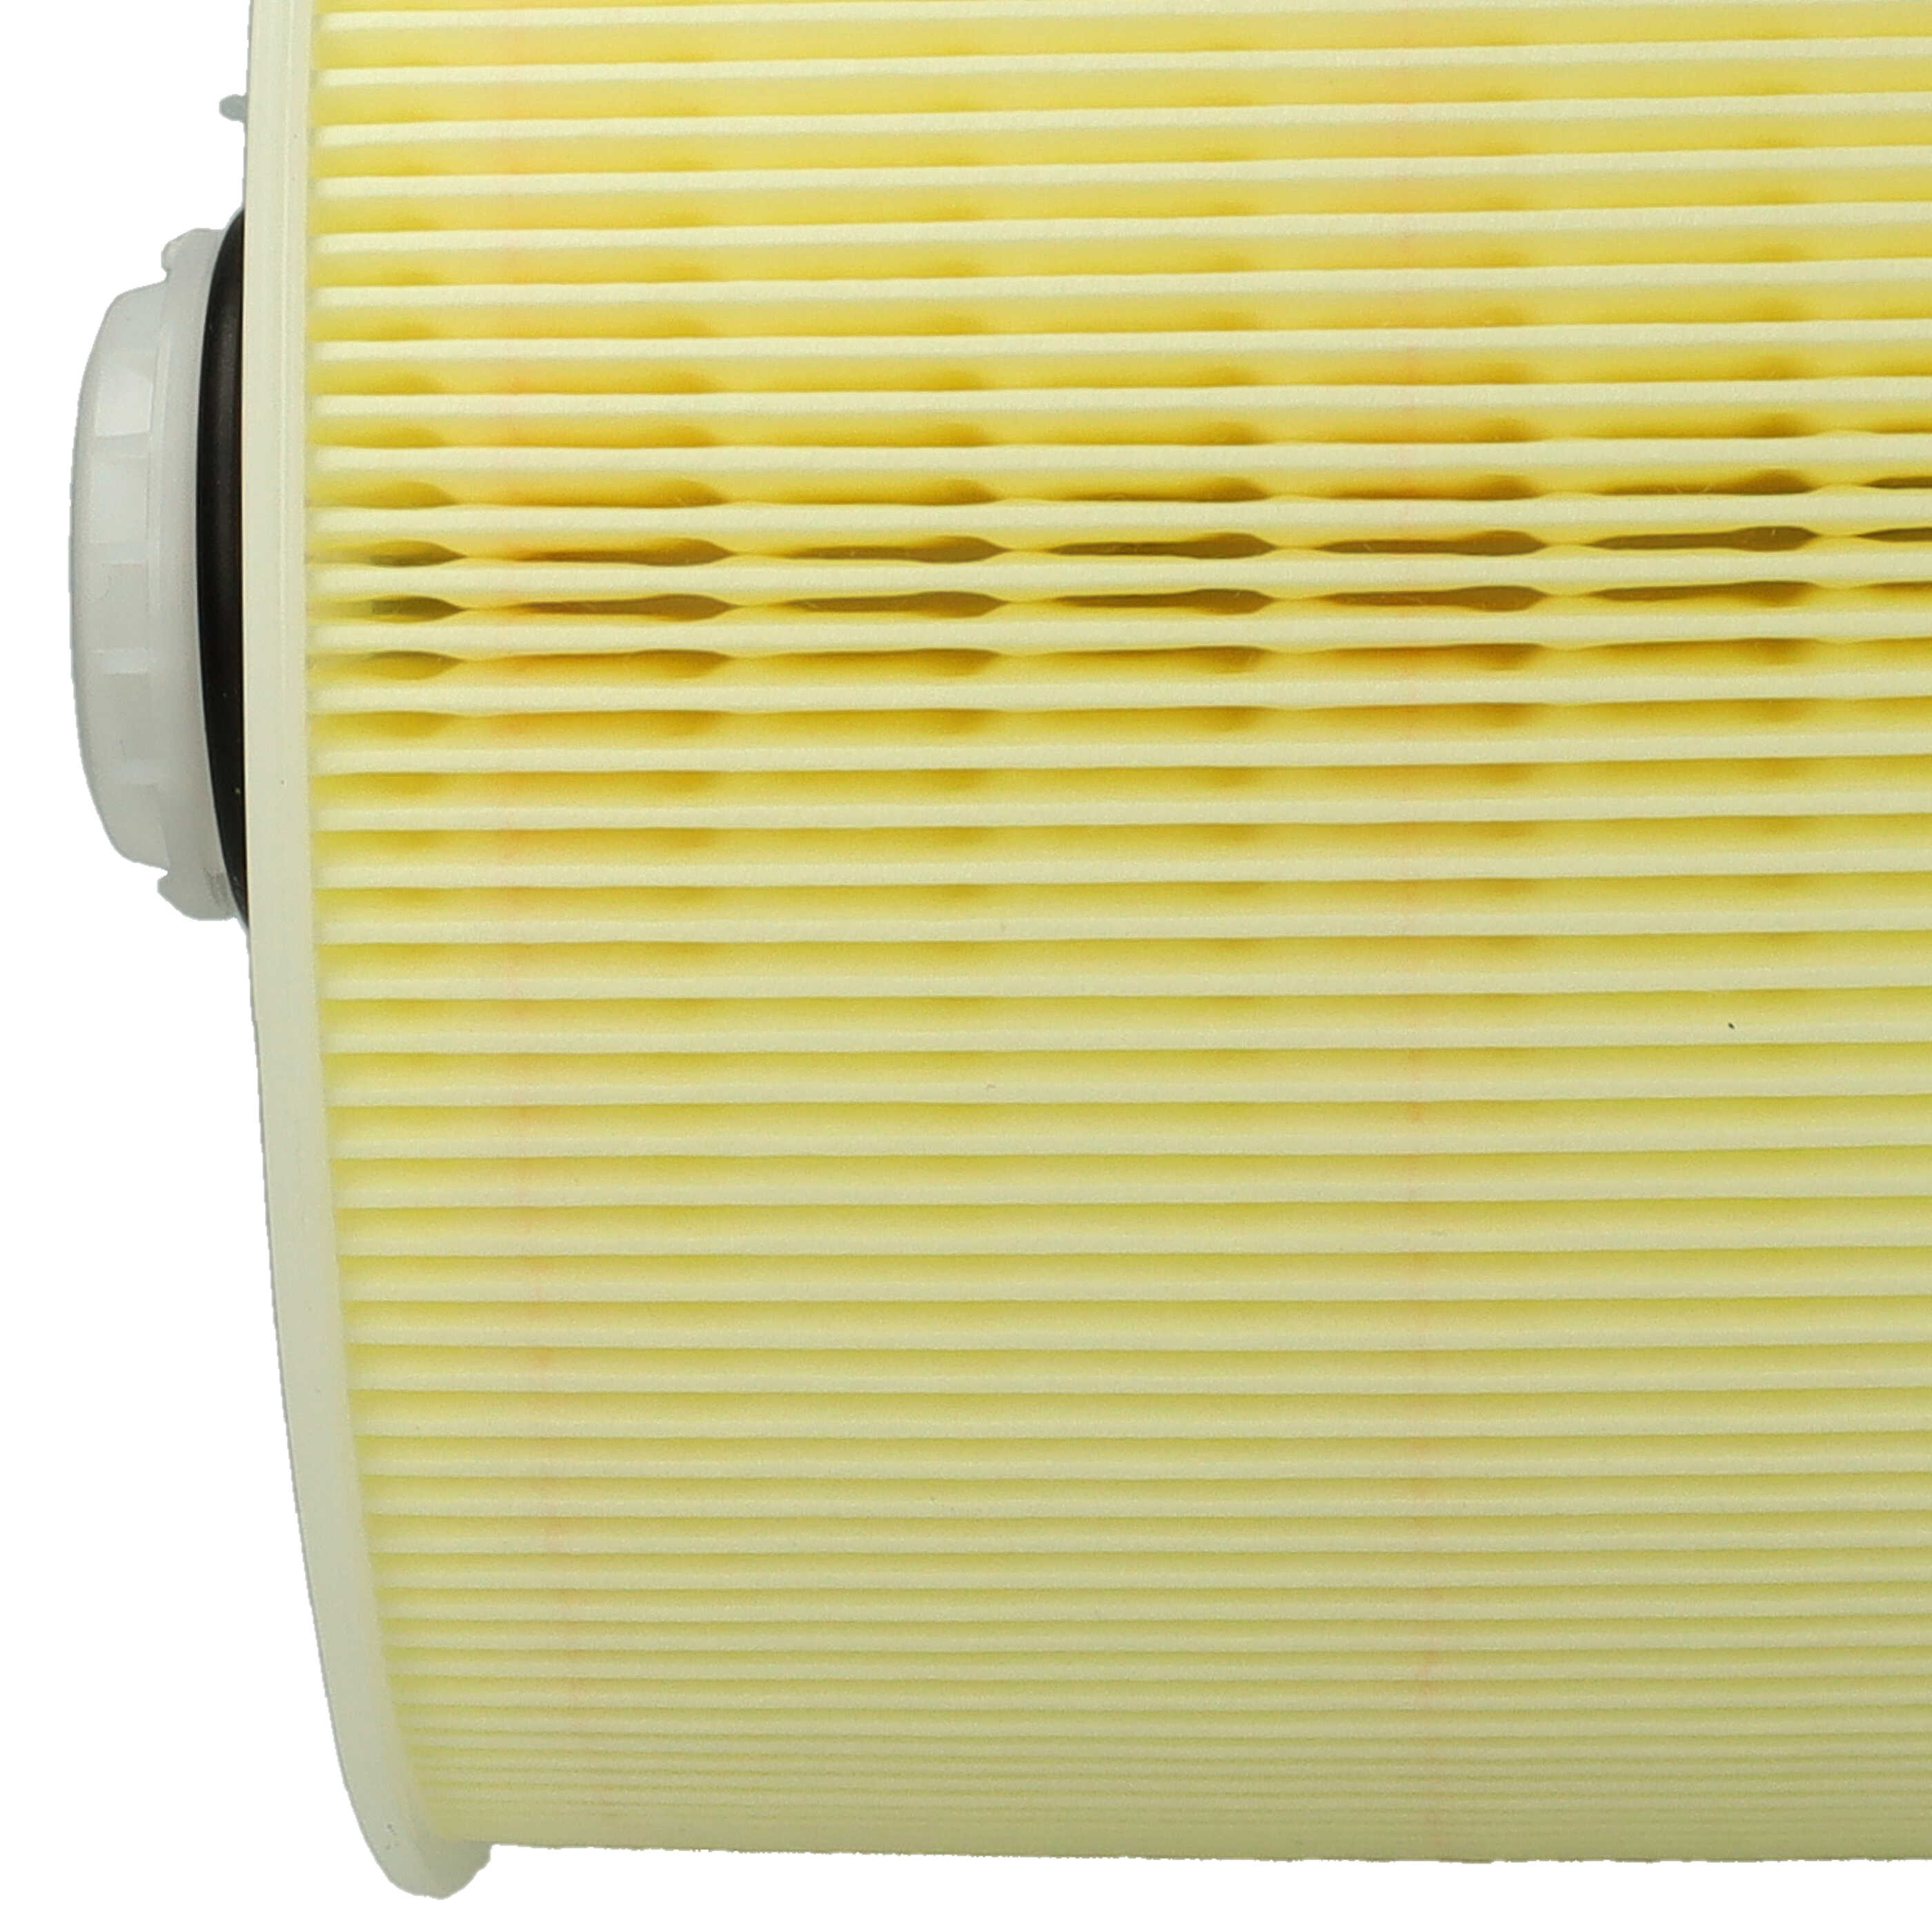 Auto Luftfilter als Ersatz für ACDelco PC 3067 E u.a. - Motor-Filter